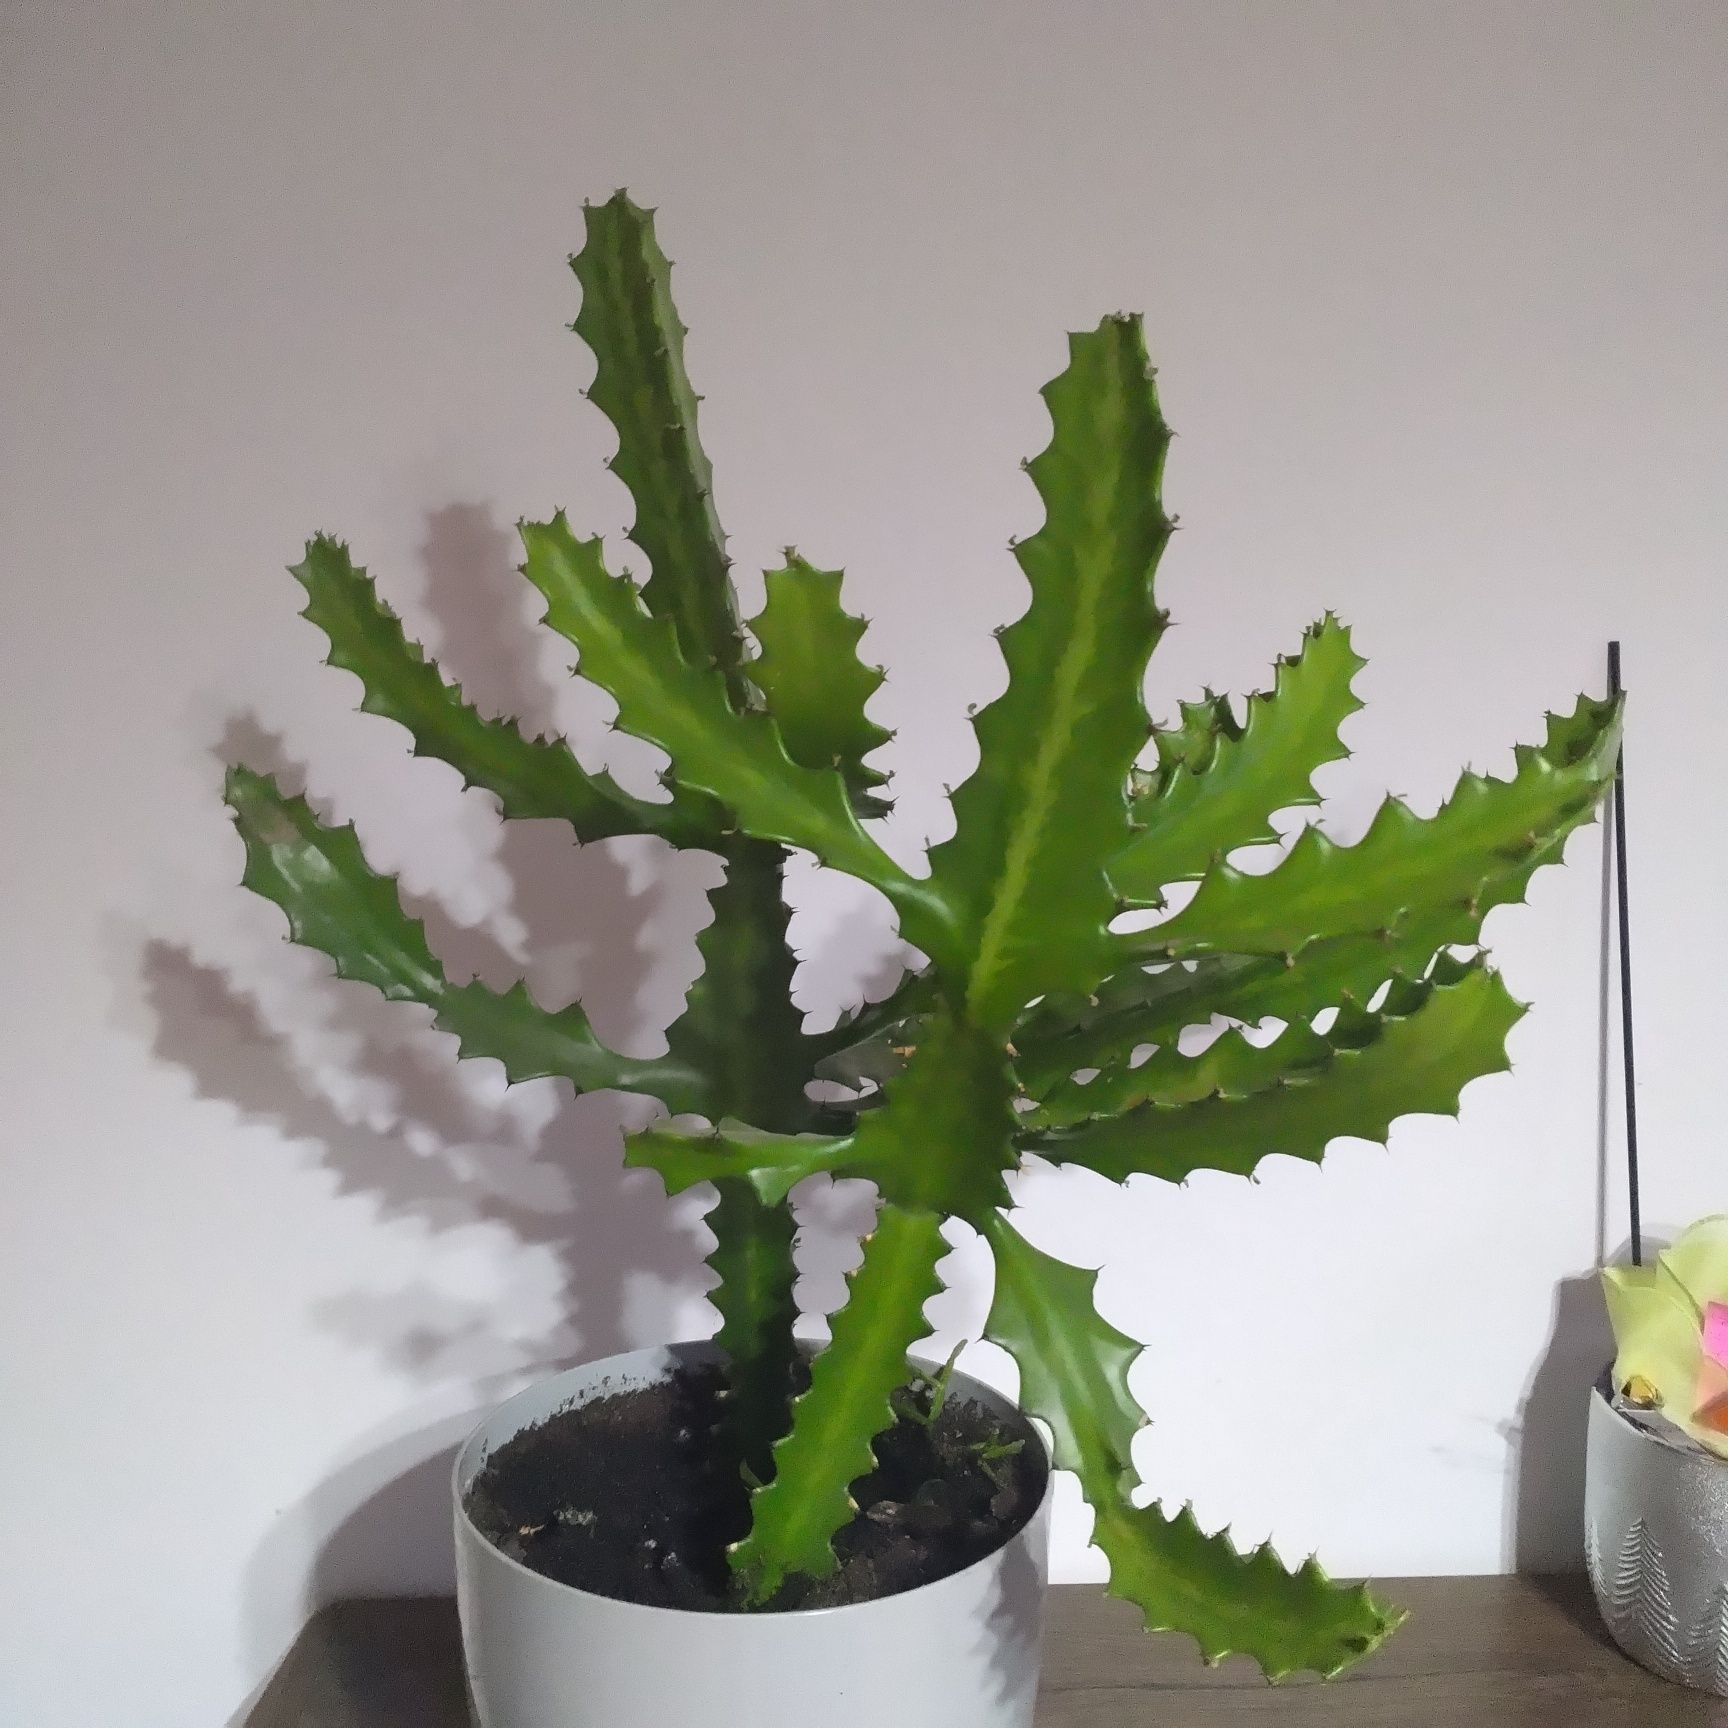 Ładny zdrowy kaktus